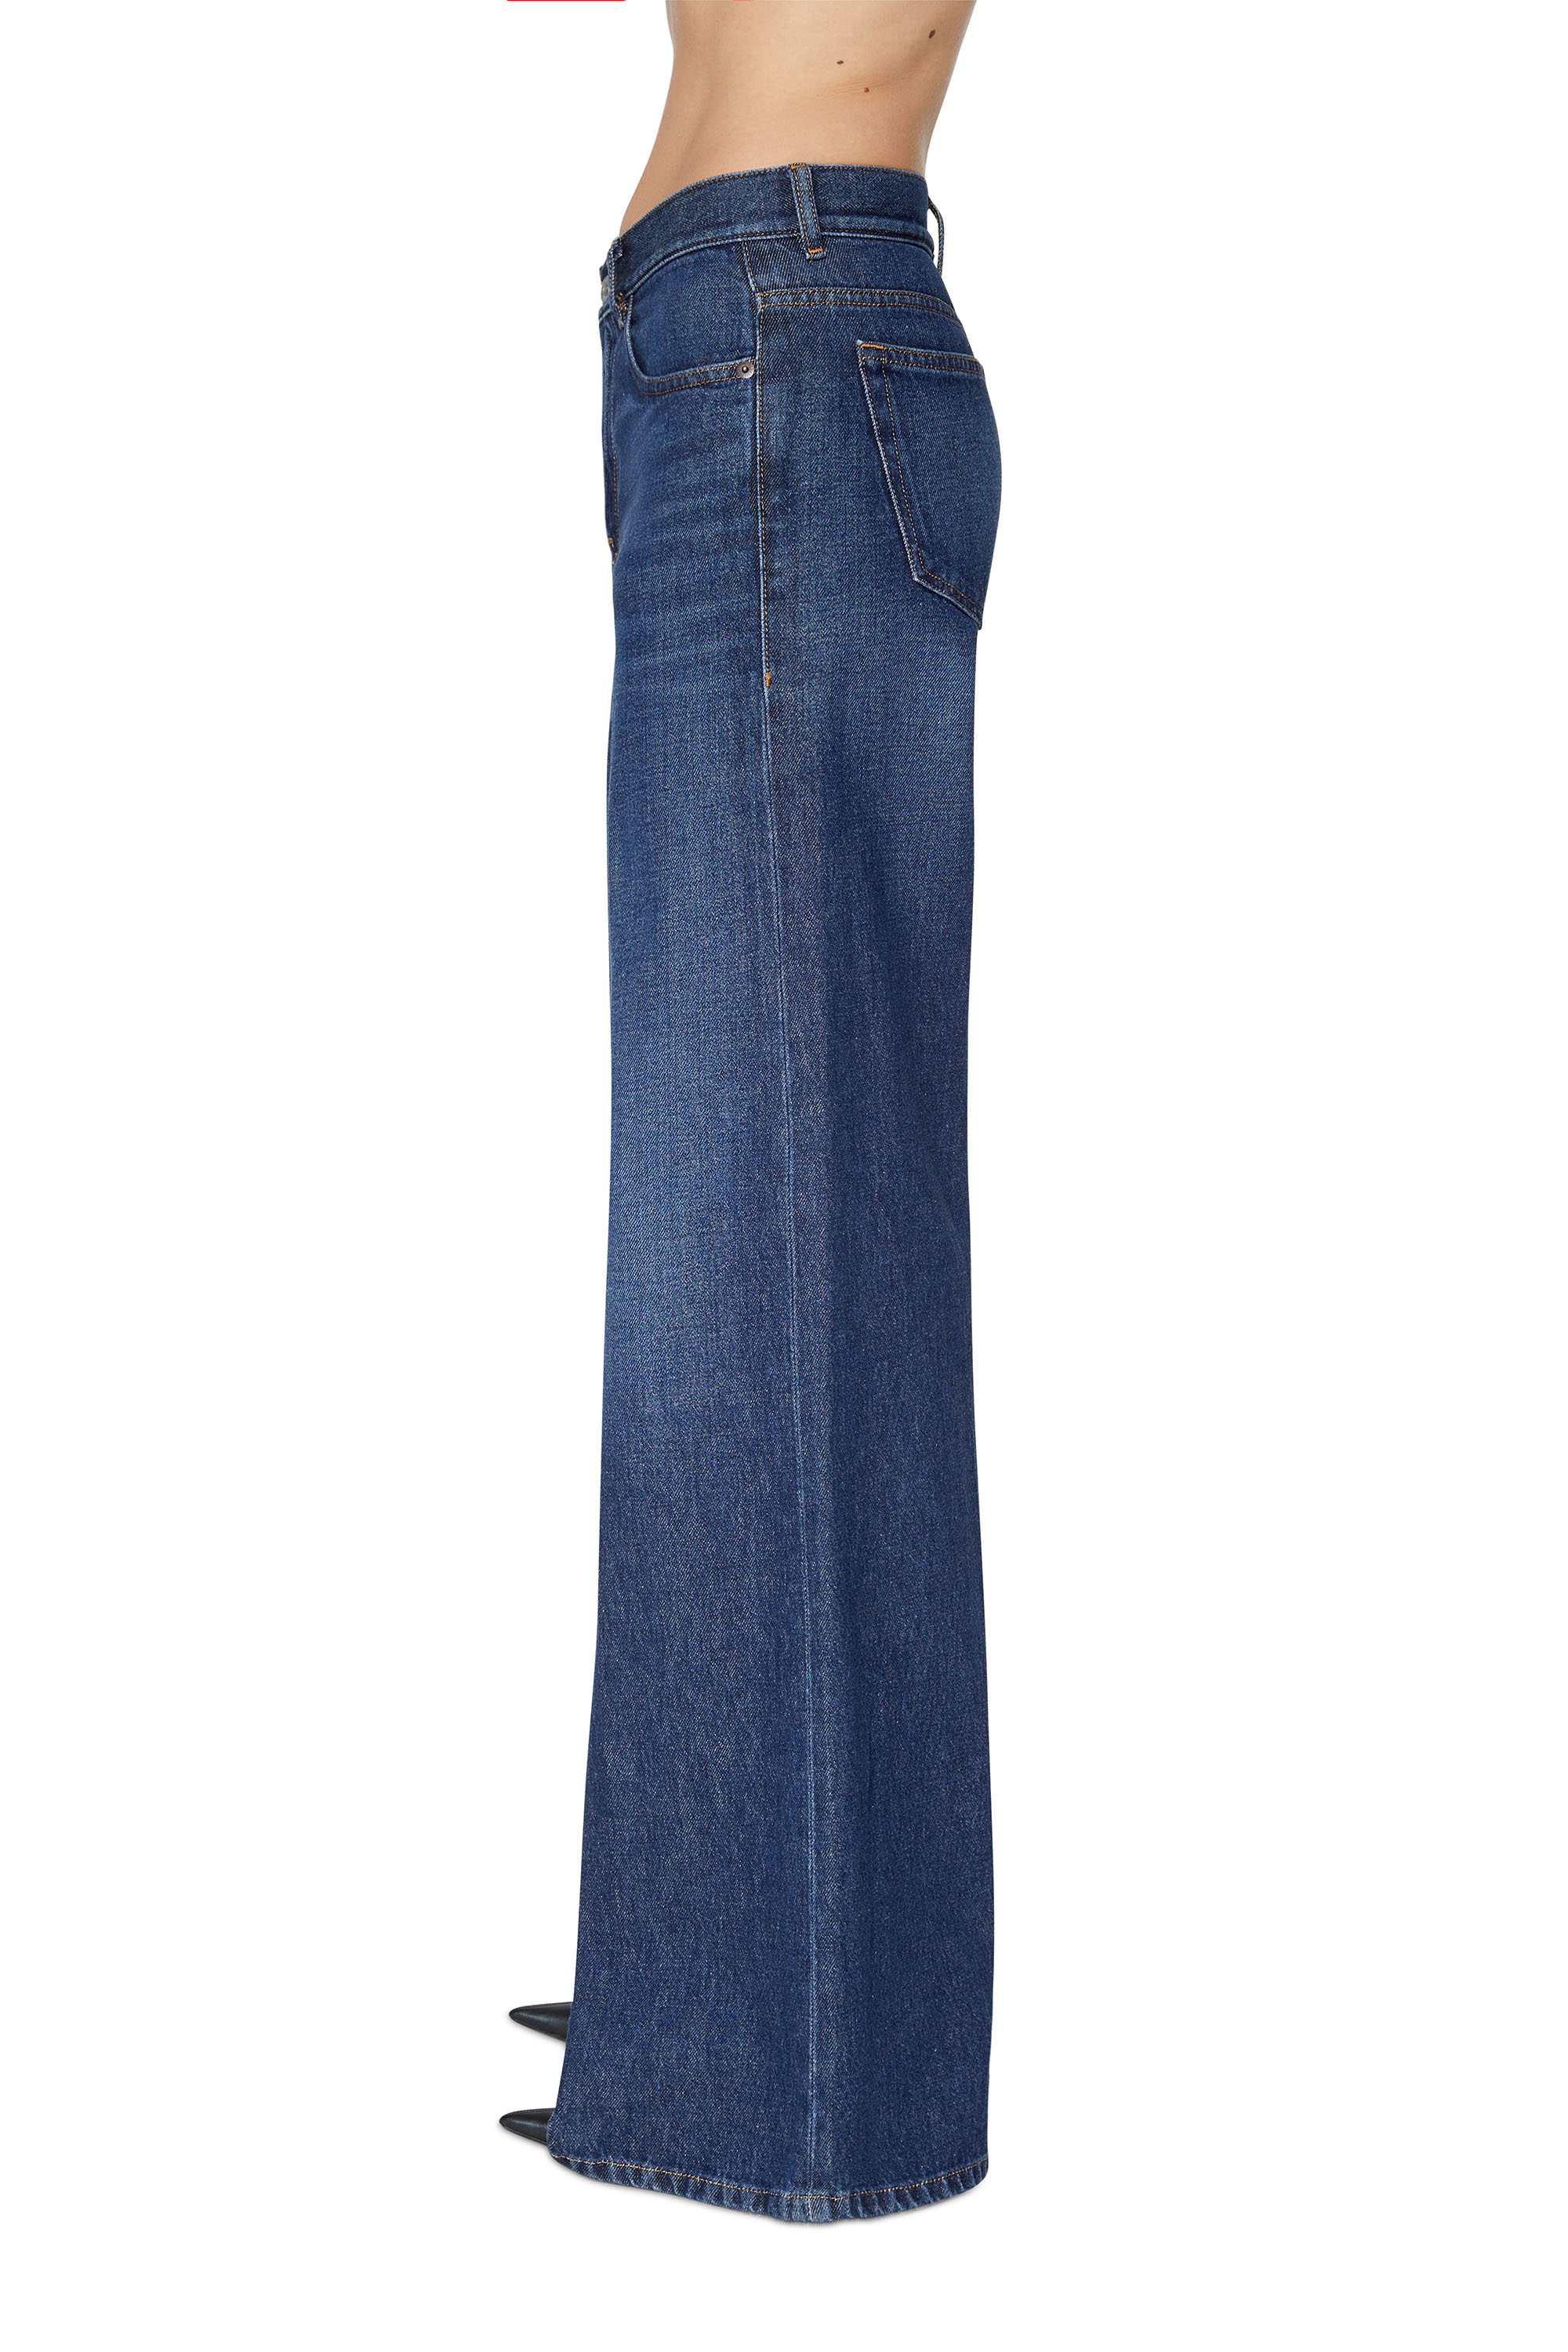 Damen Bekleidung Jeans Röhrenjeans DIESEL Denim Andere materialien jeans in Blau 